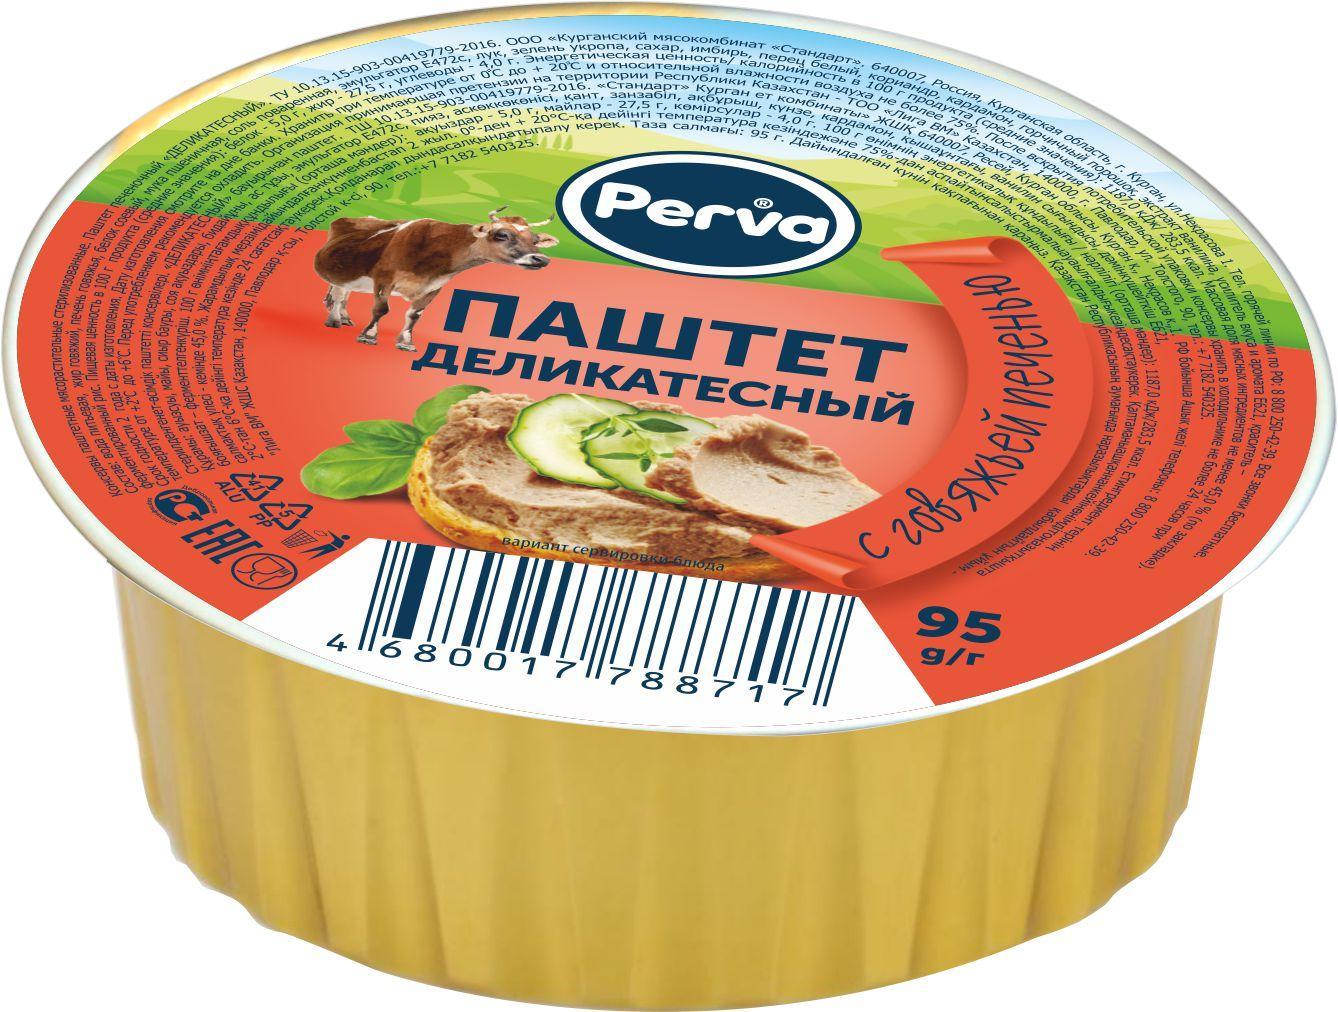 Паштет с говяжей печенью,  Perva, 95 гр., ж/б